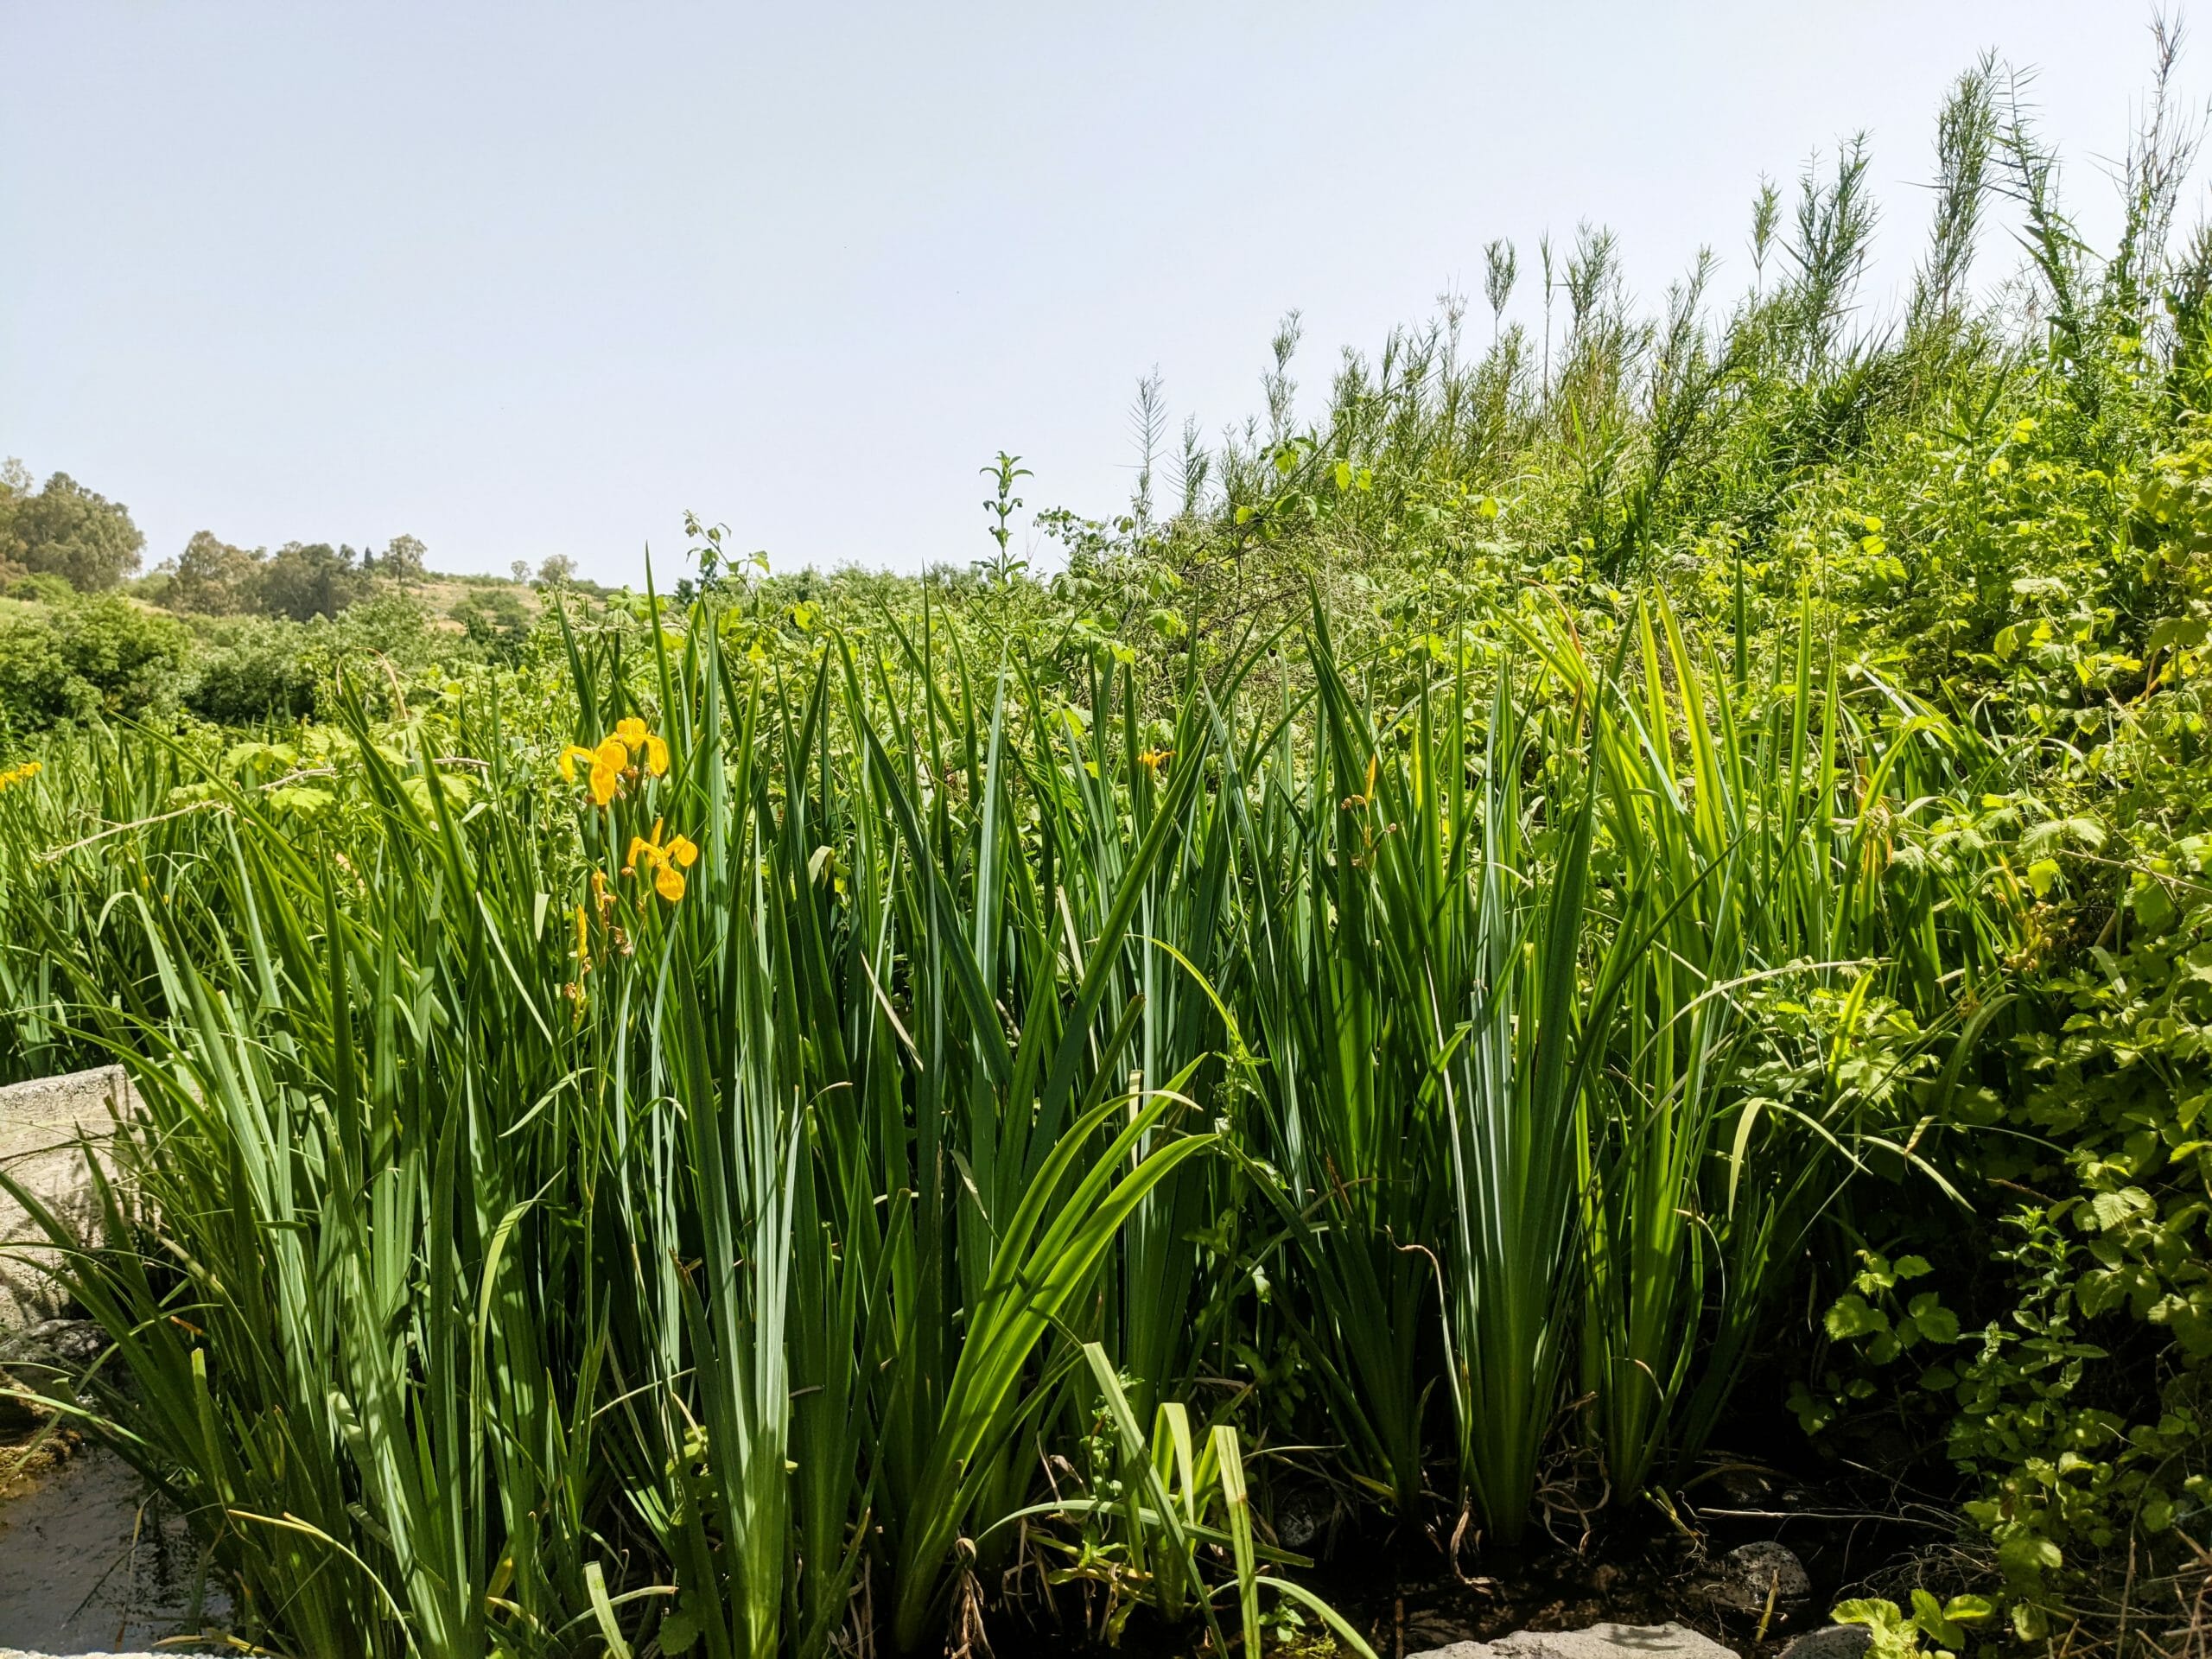 איריס ענף, צהוב וגבוה, פורח בחודש מאי בעין תינה, צמח נדיר ומוגן, צילום: ד"ר ענת אביטל